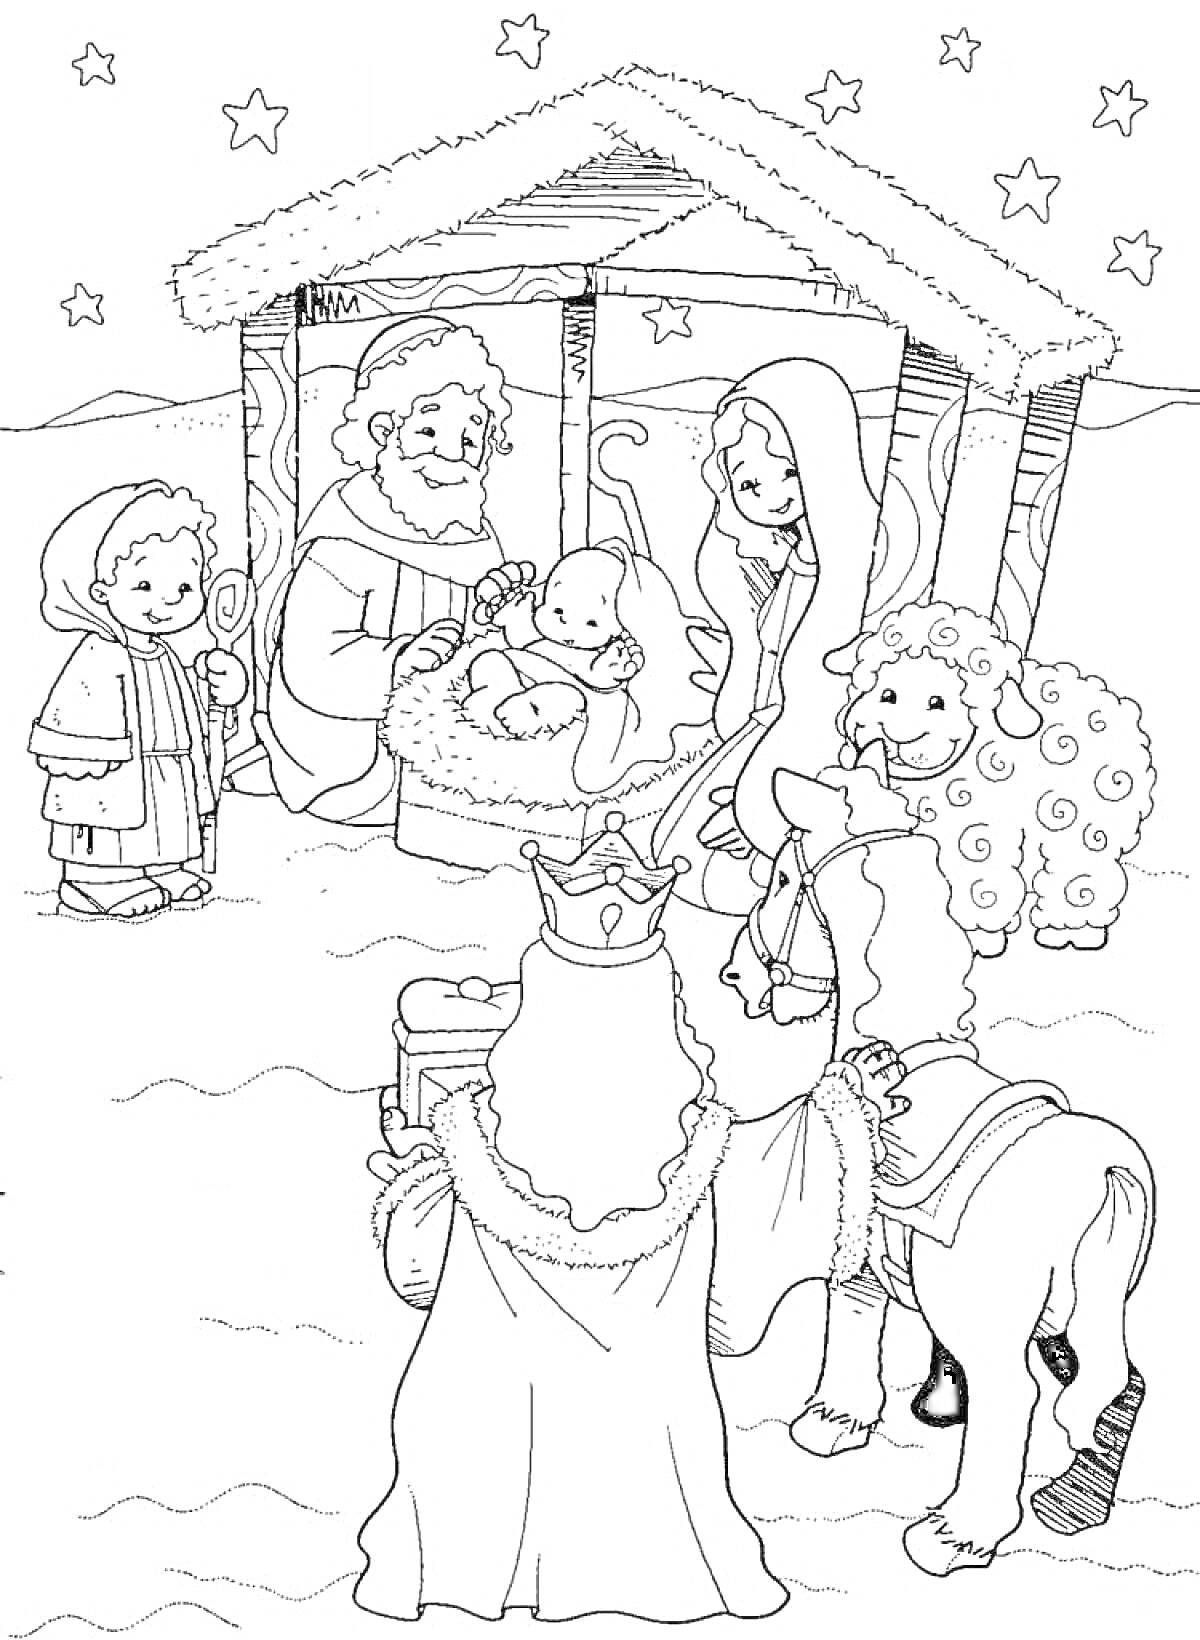 Раскраска Рождественская сцена с младенцем Иисусом, Марией, Иосифом, пастухом, тремя волхвами и ангелами в хлеву под звездами.